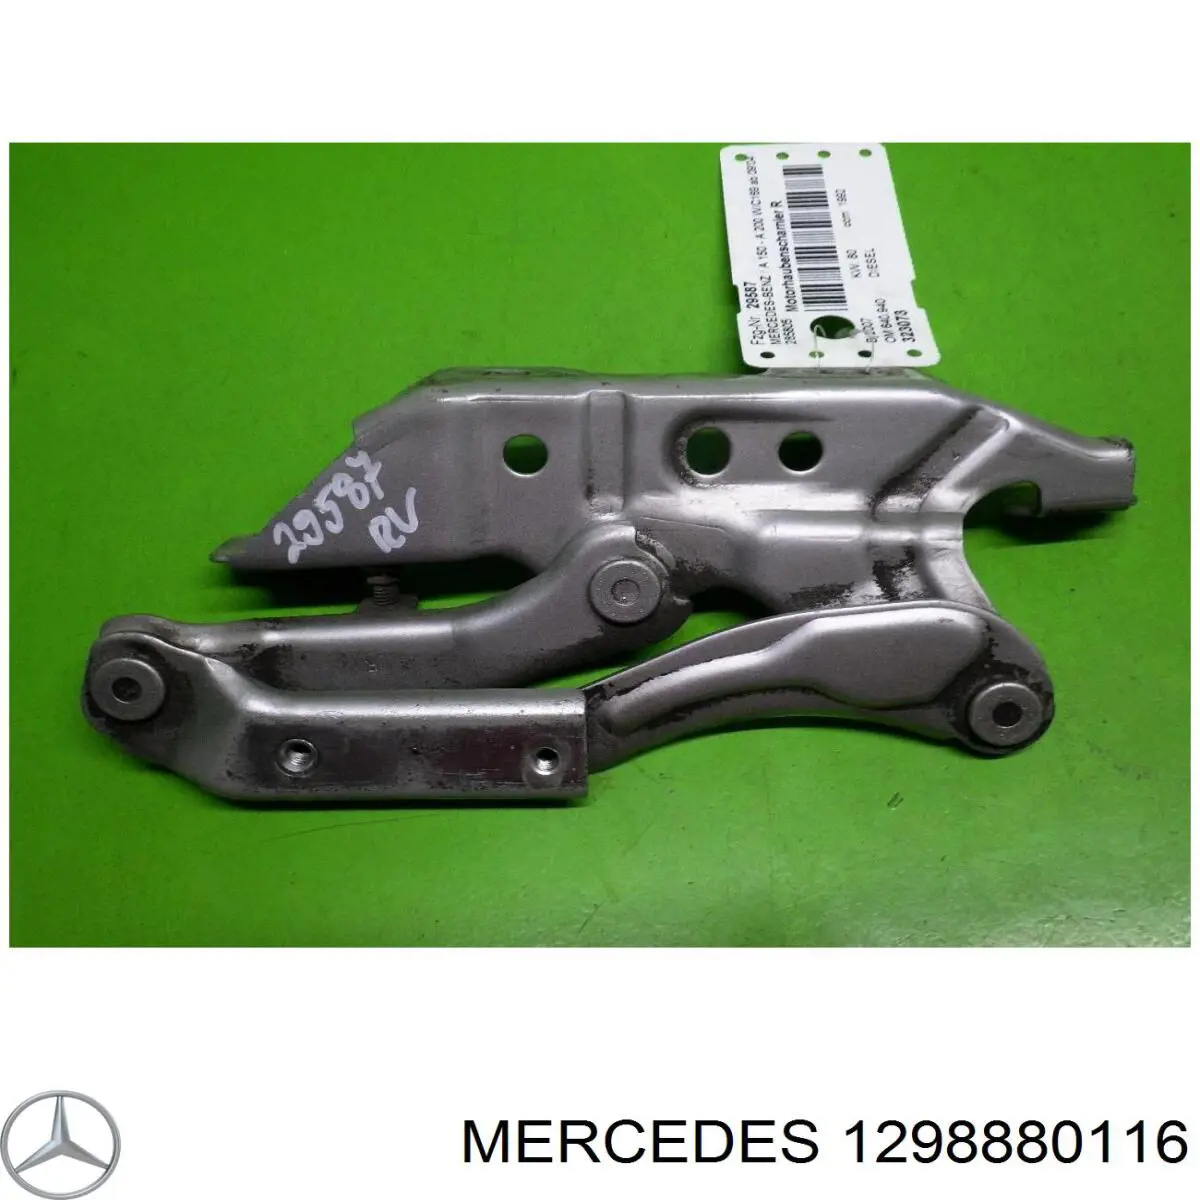 Emblema de capot para Mercedes ML/GLE (W163)